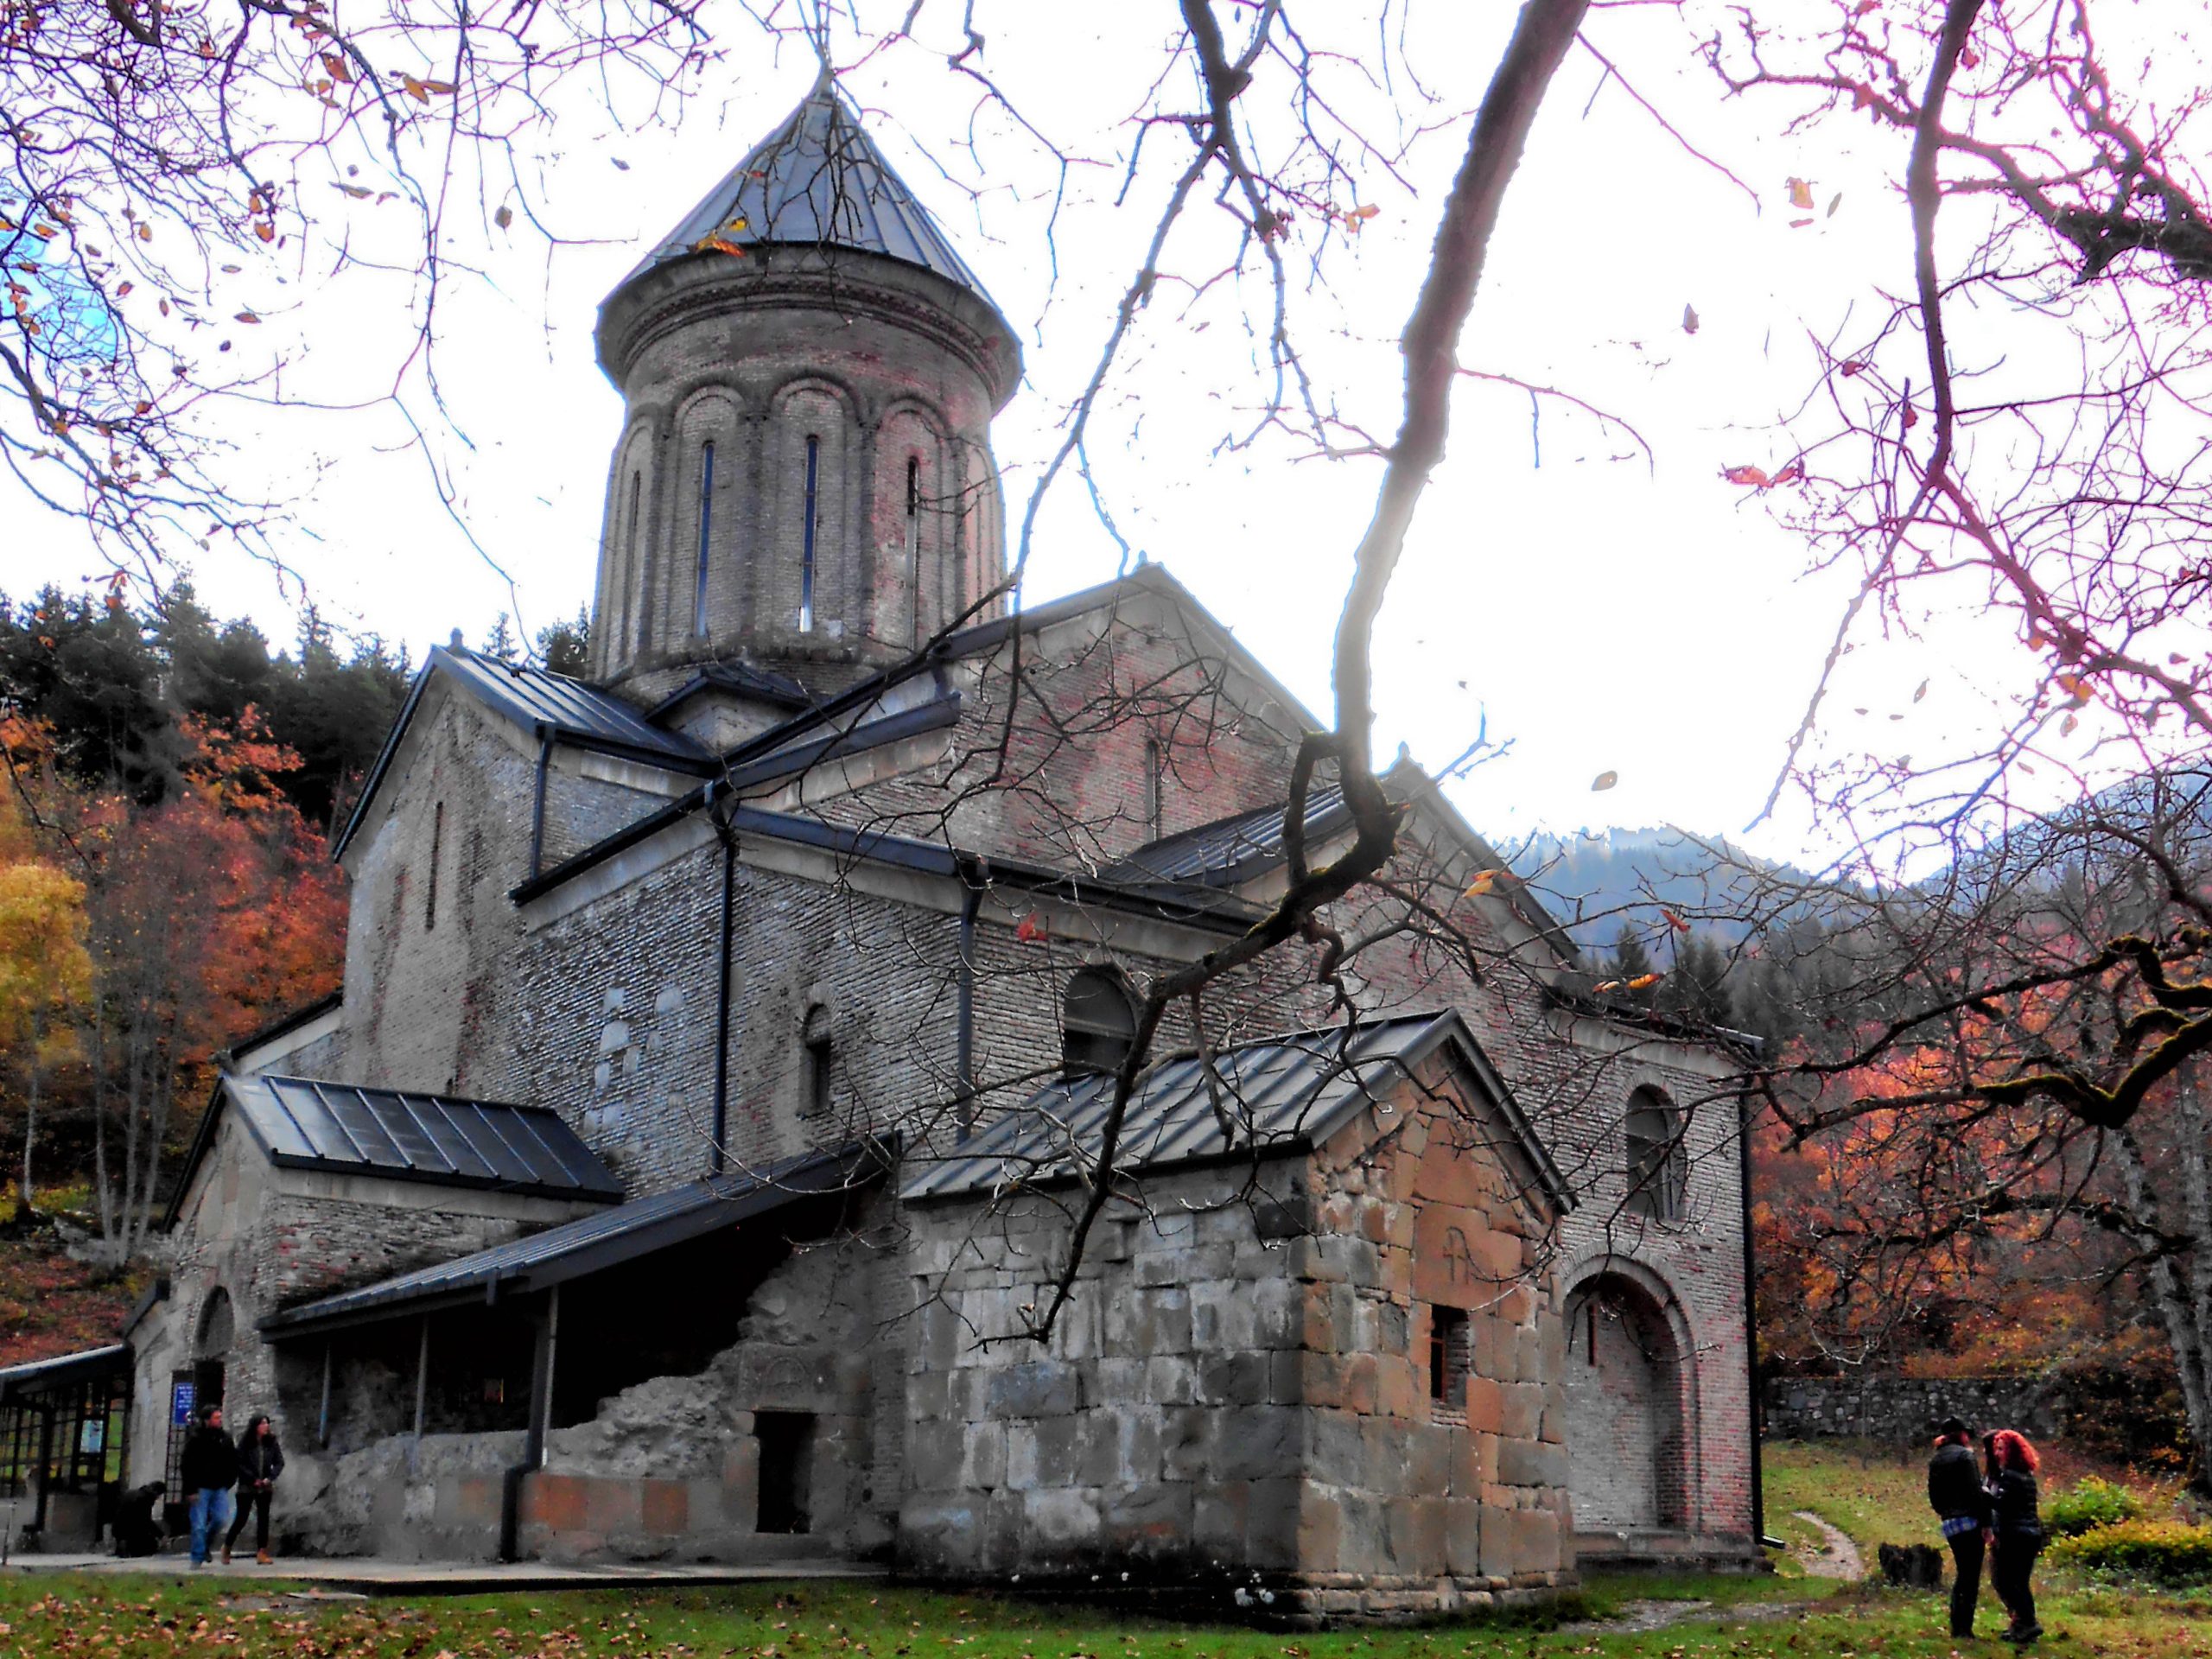 Kintsvisi Monastery scaled новости Грузинская Православная Церковь, Кинцвиси, монастырь